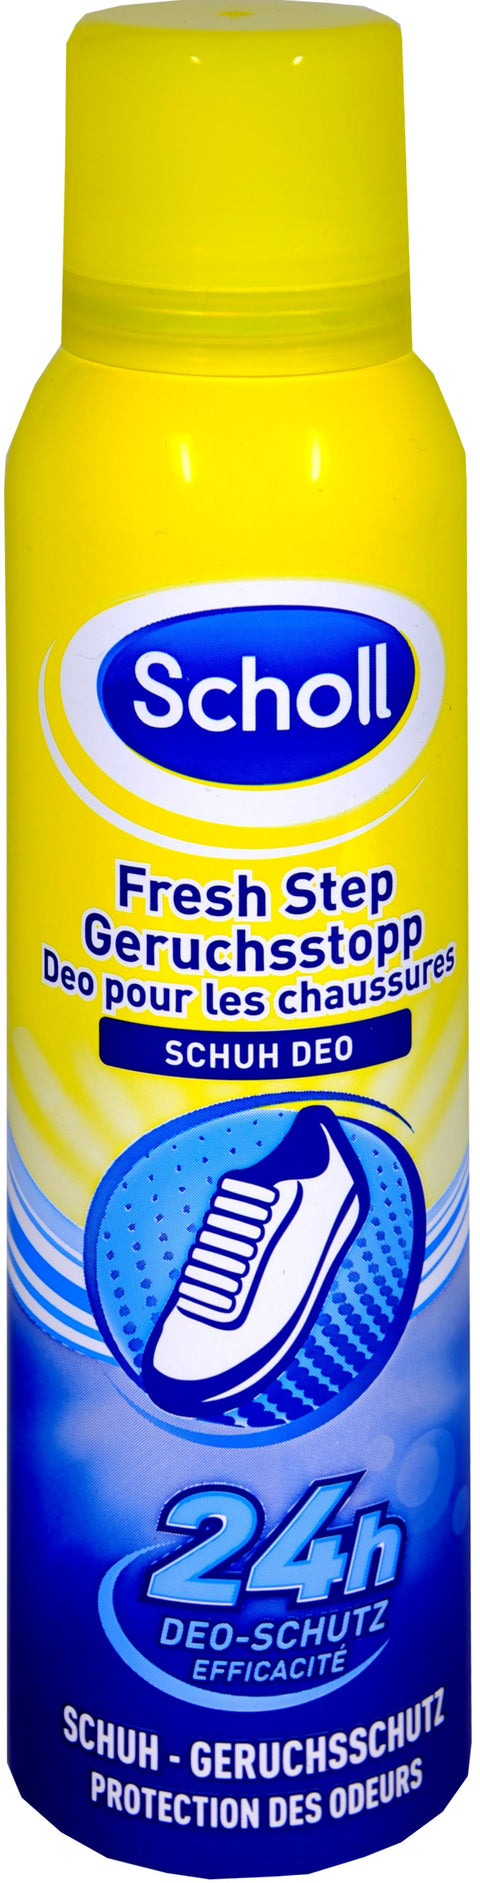   Scholl Schuh-Deo Geruchstop Fresh Step bester-kauf.ch